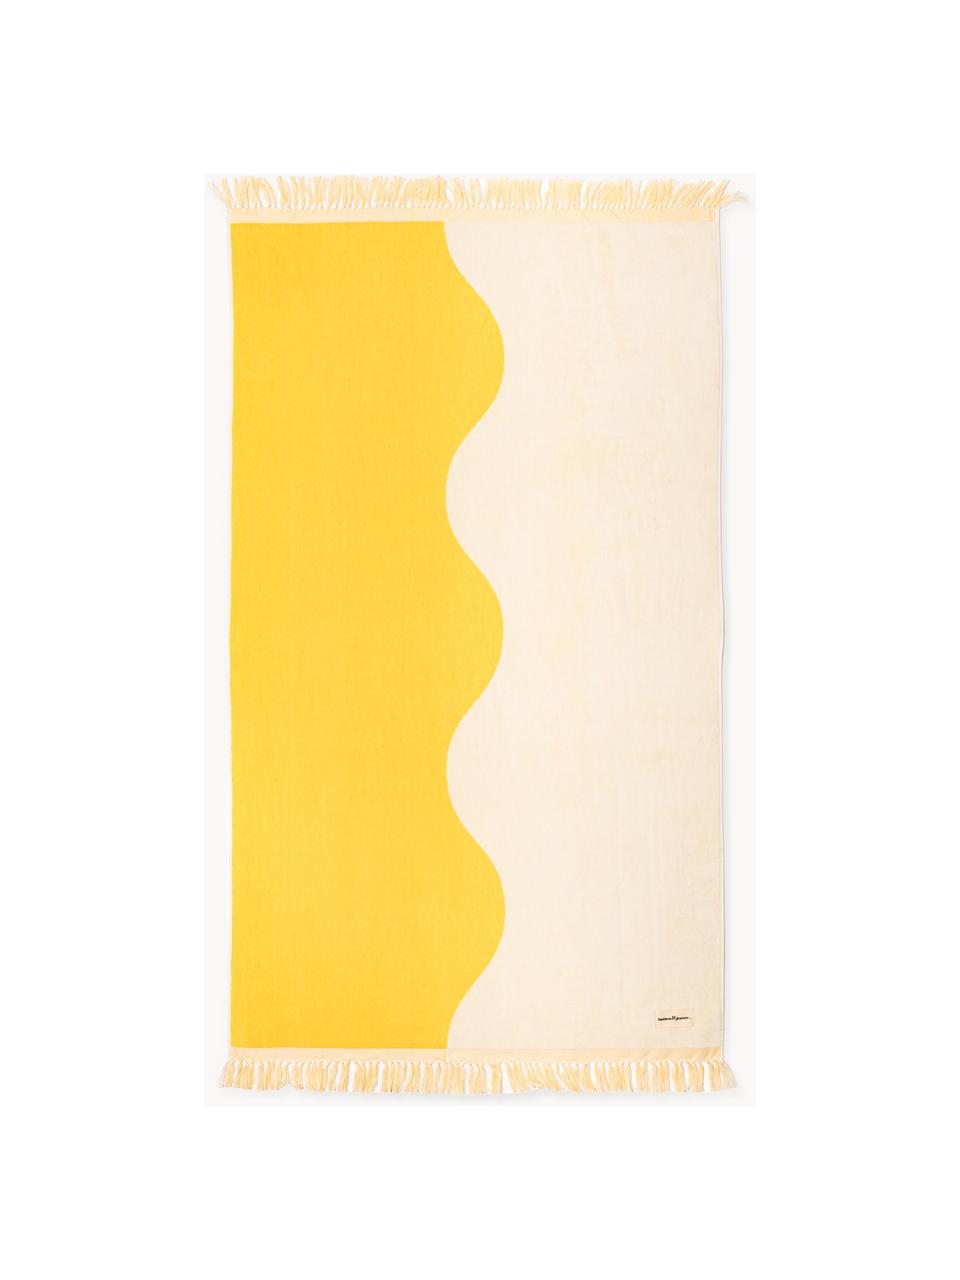 Telo mare Holiday, 100% cotone, Beige chiaro, giallo acceso, Larg. 80 x Lung. 168 cm